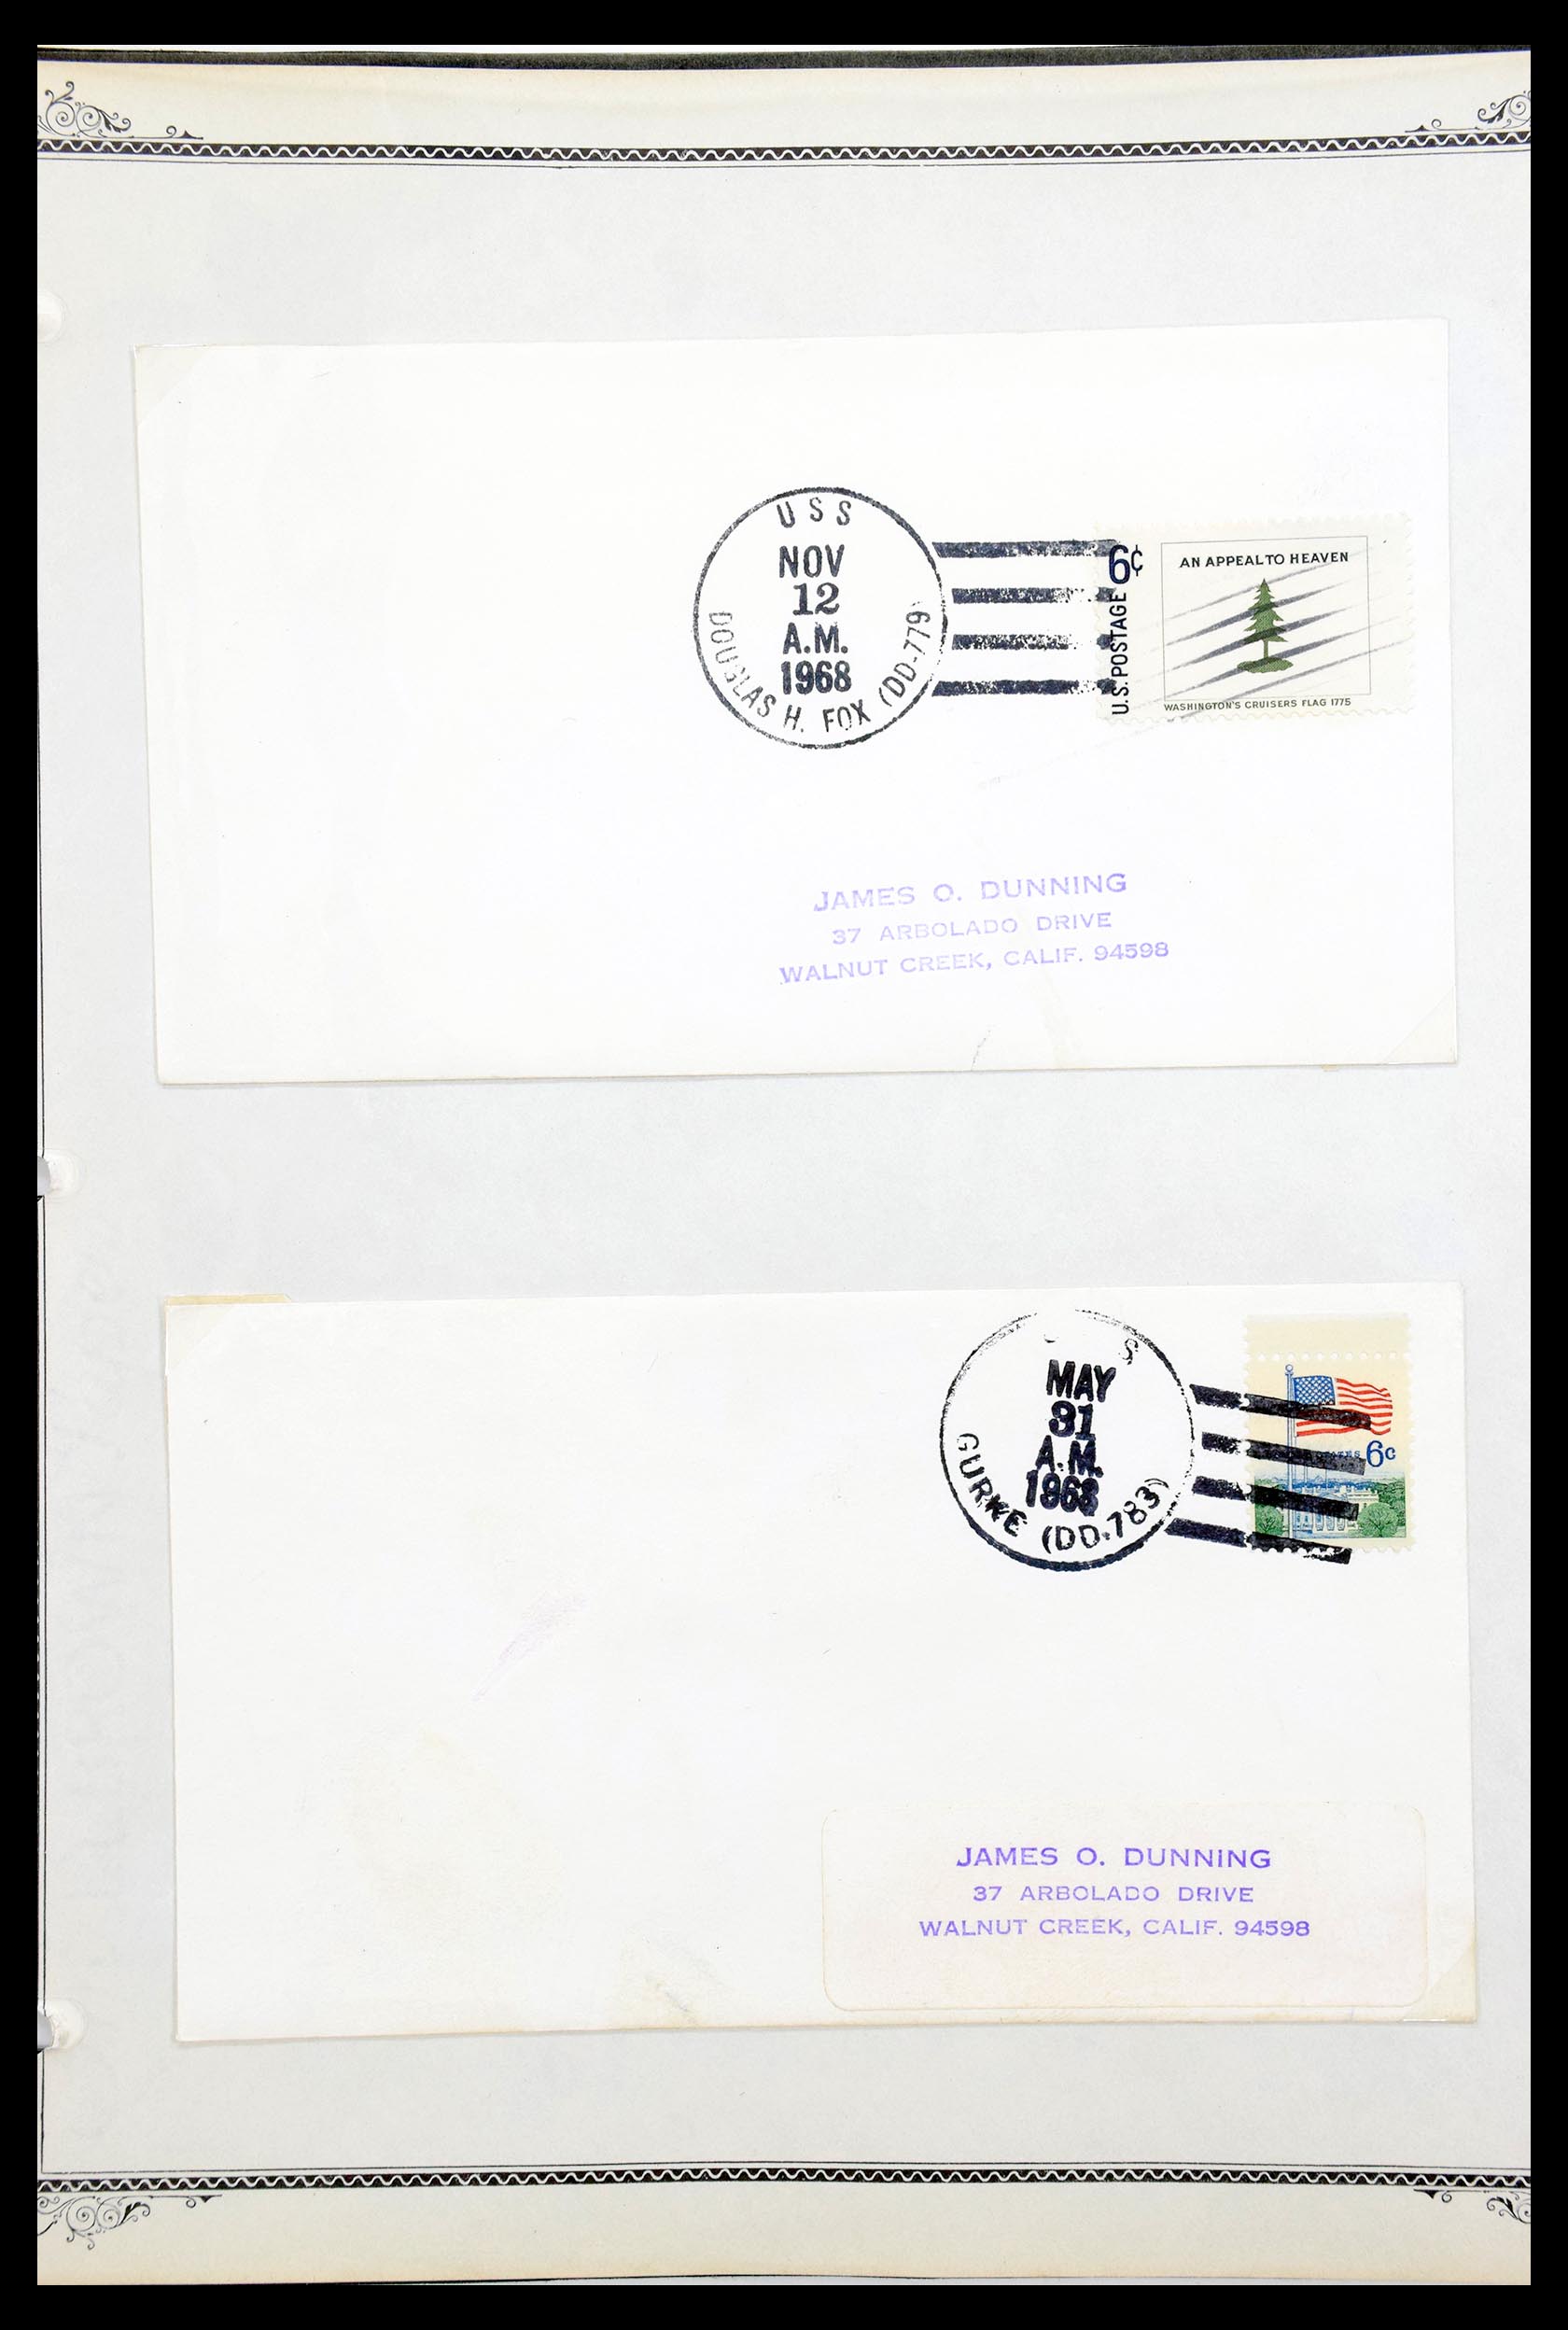 30341 041 - 30341 USA scheepspost brieven 1930-1970.